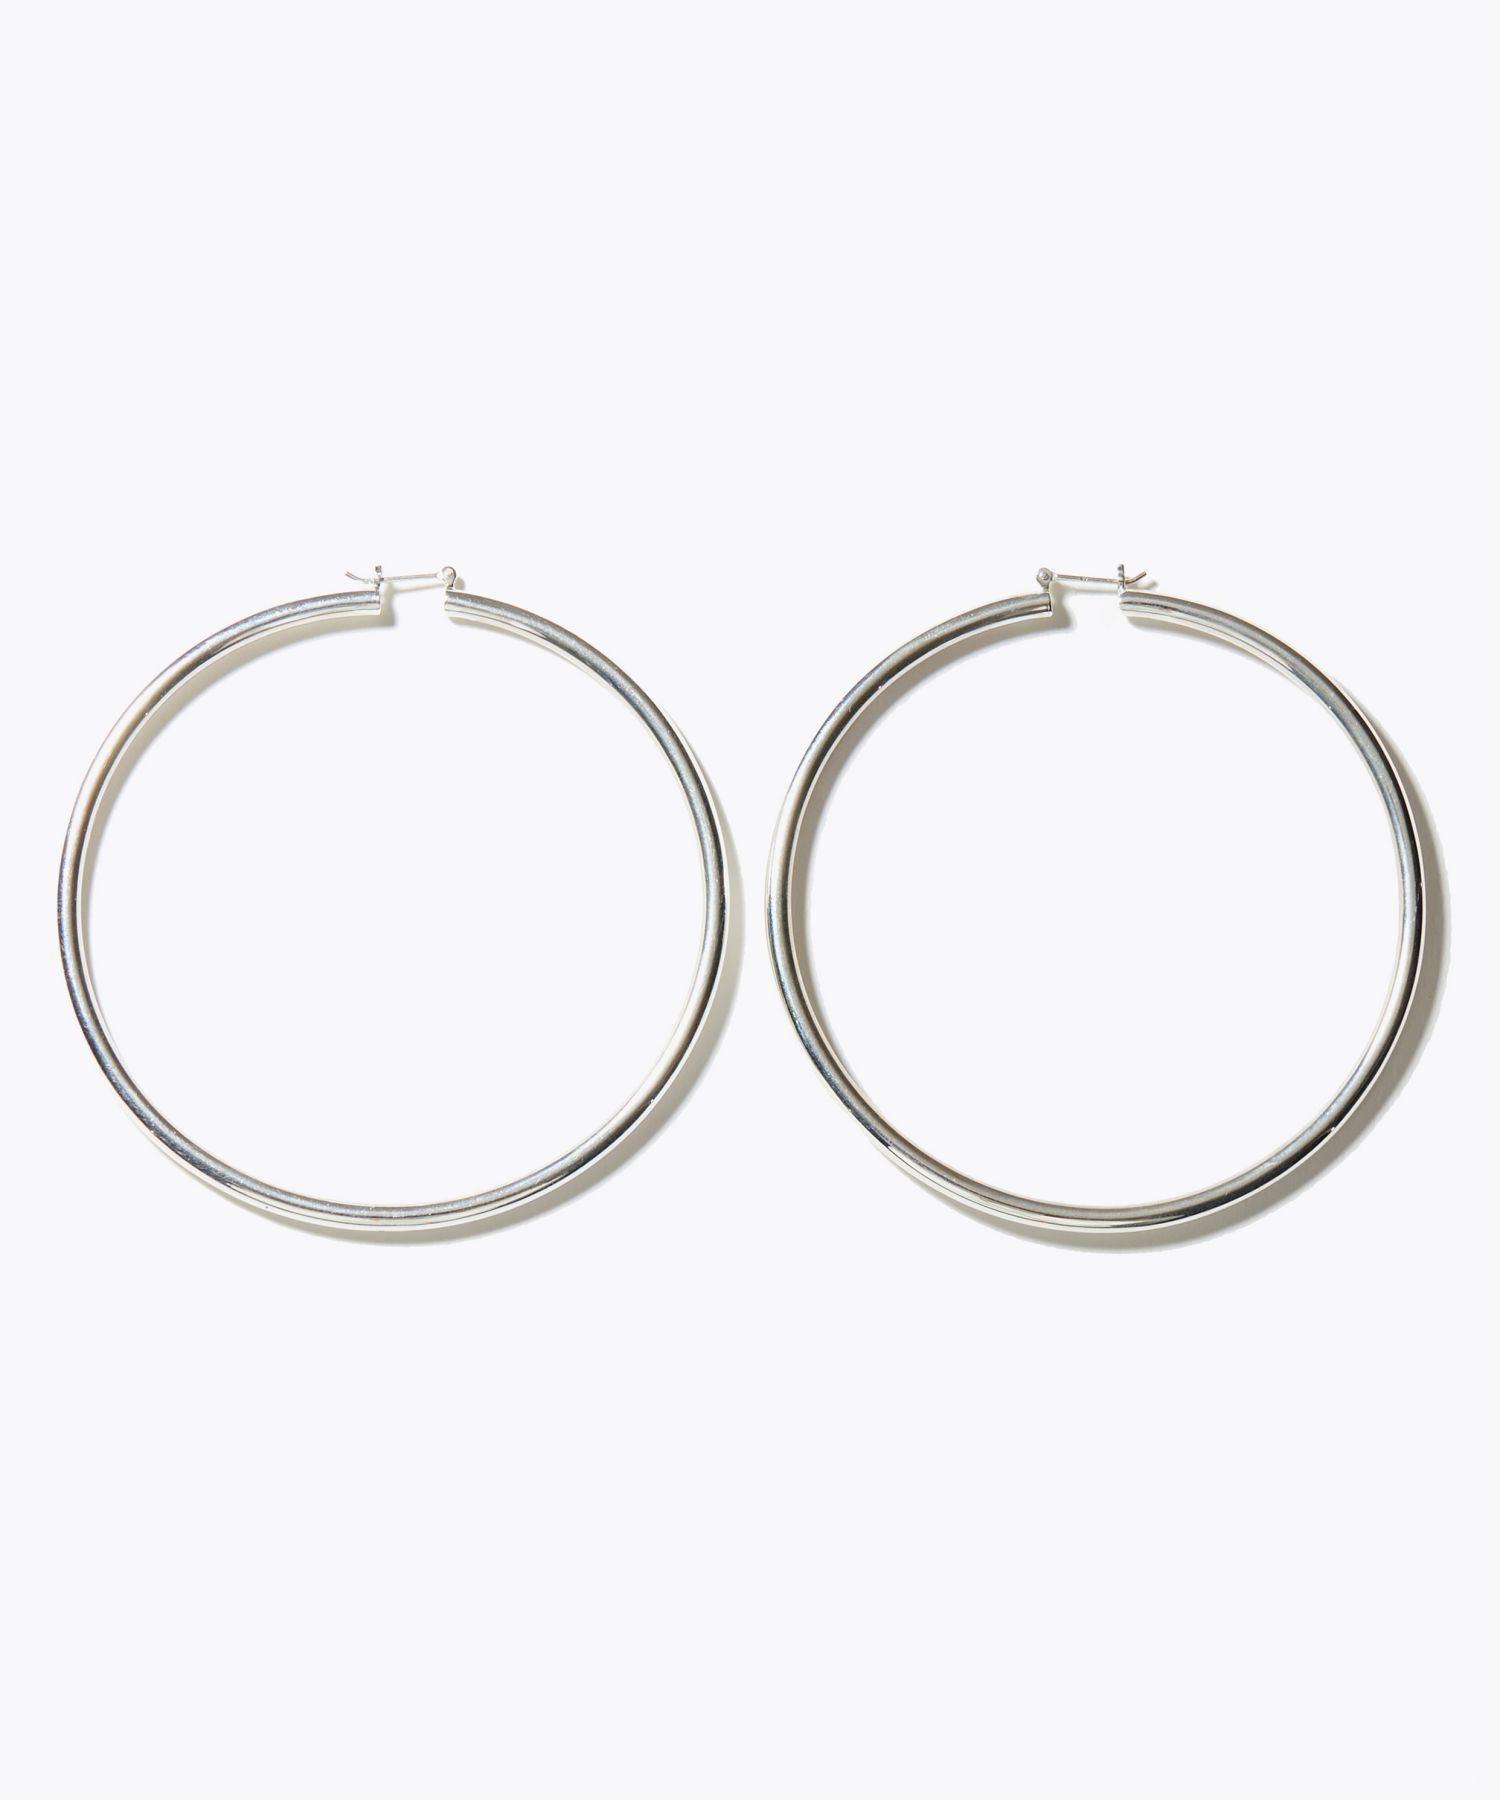 [bone] large silver hoop pierced earring